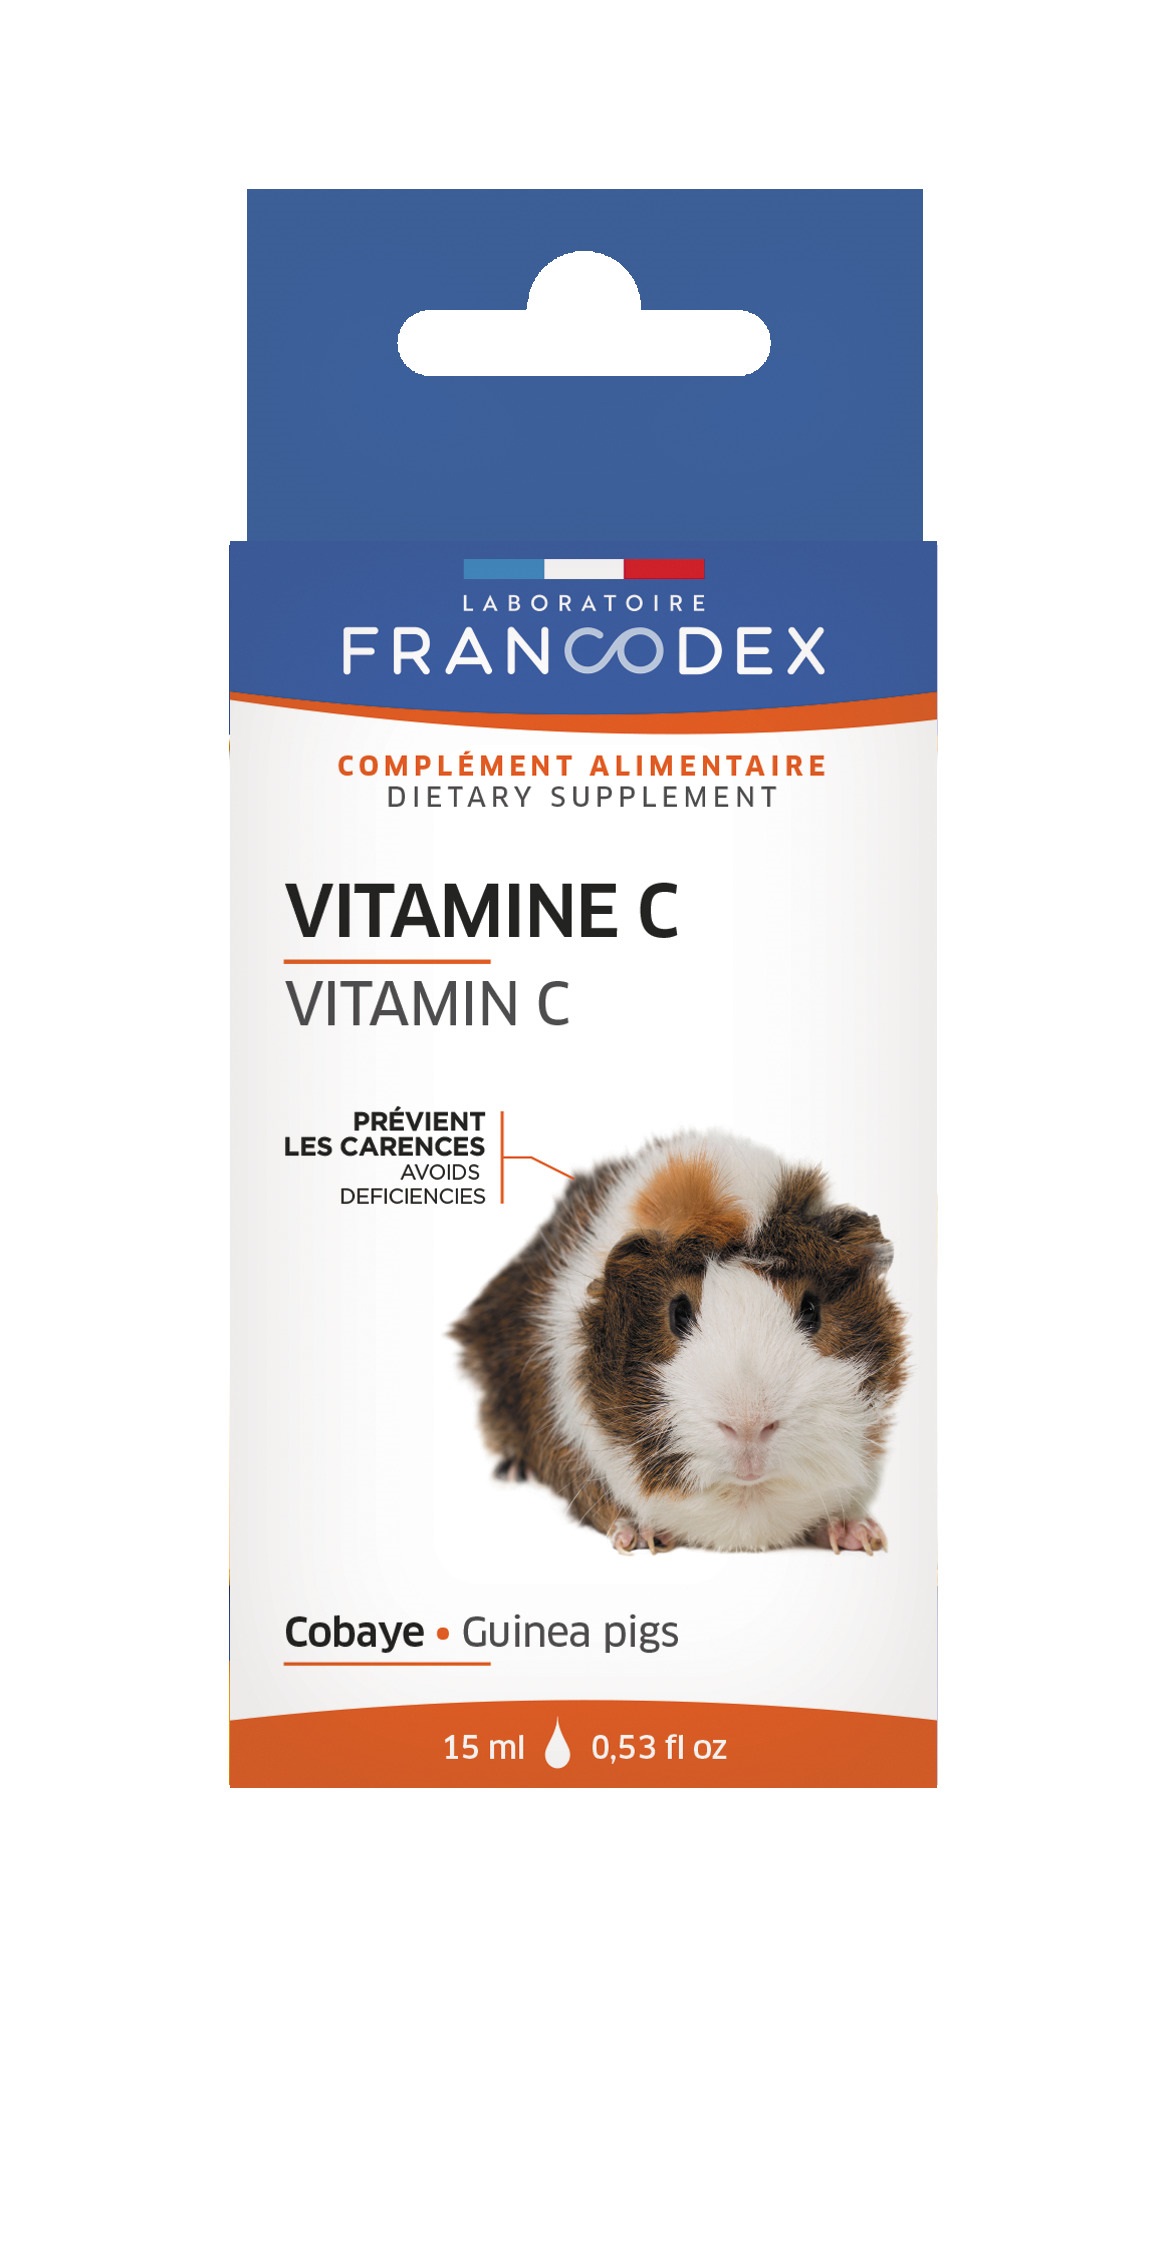 Comprimés de Vitamine C - Vitalvéto - Pour cochon d'inde - x 40